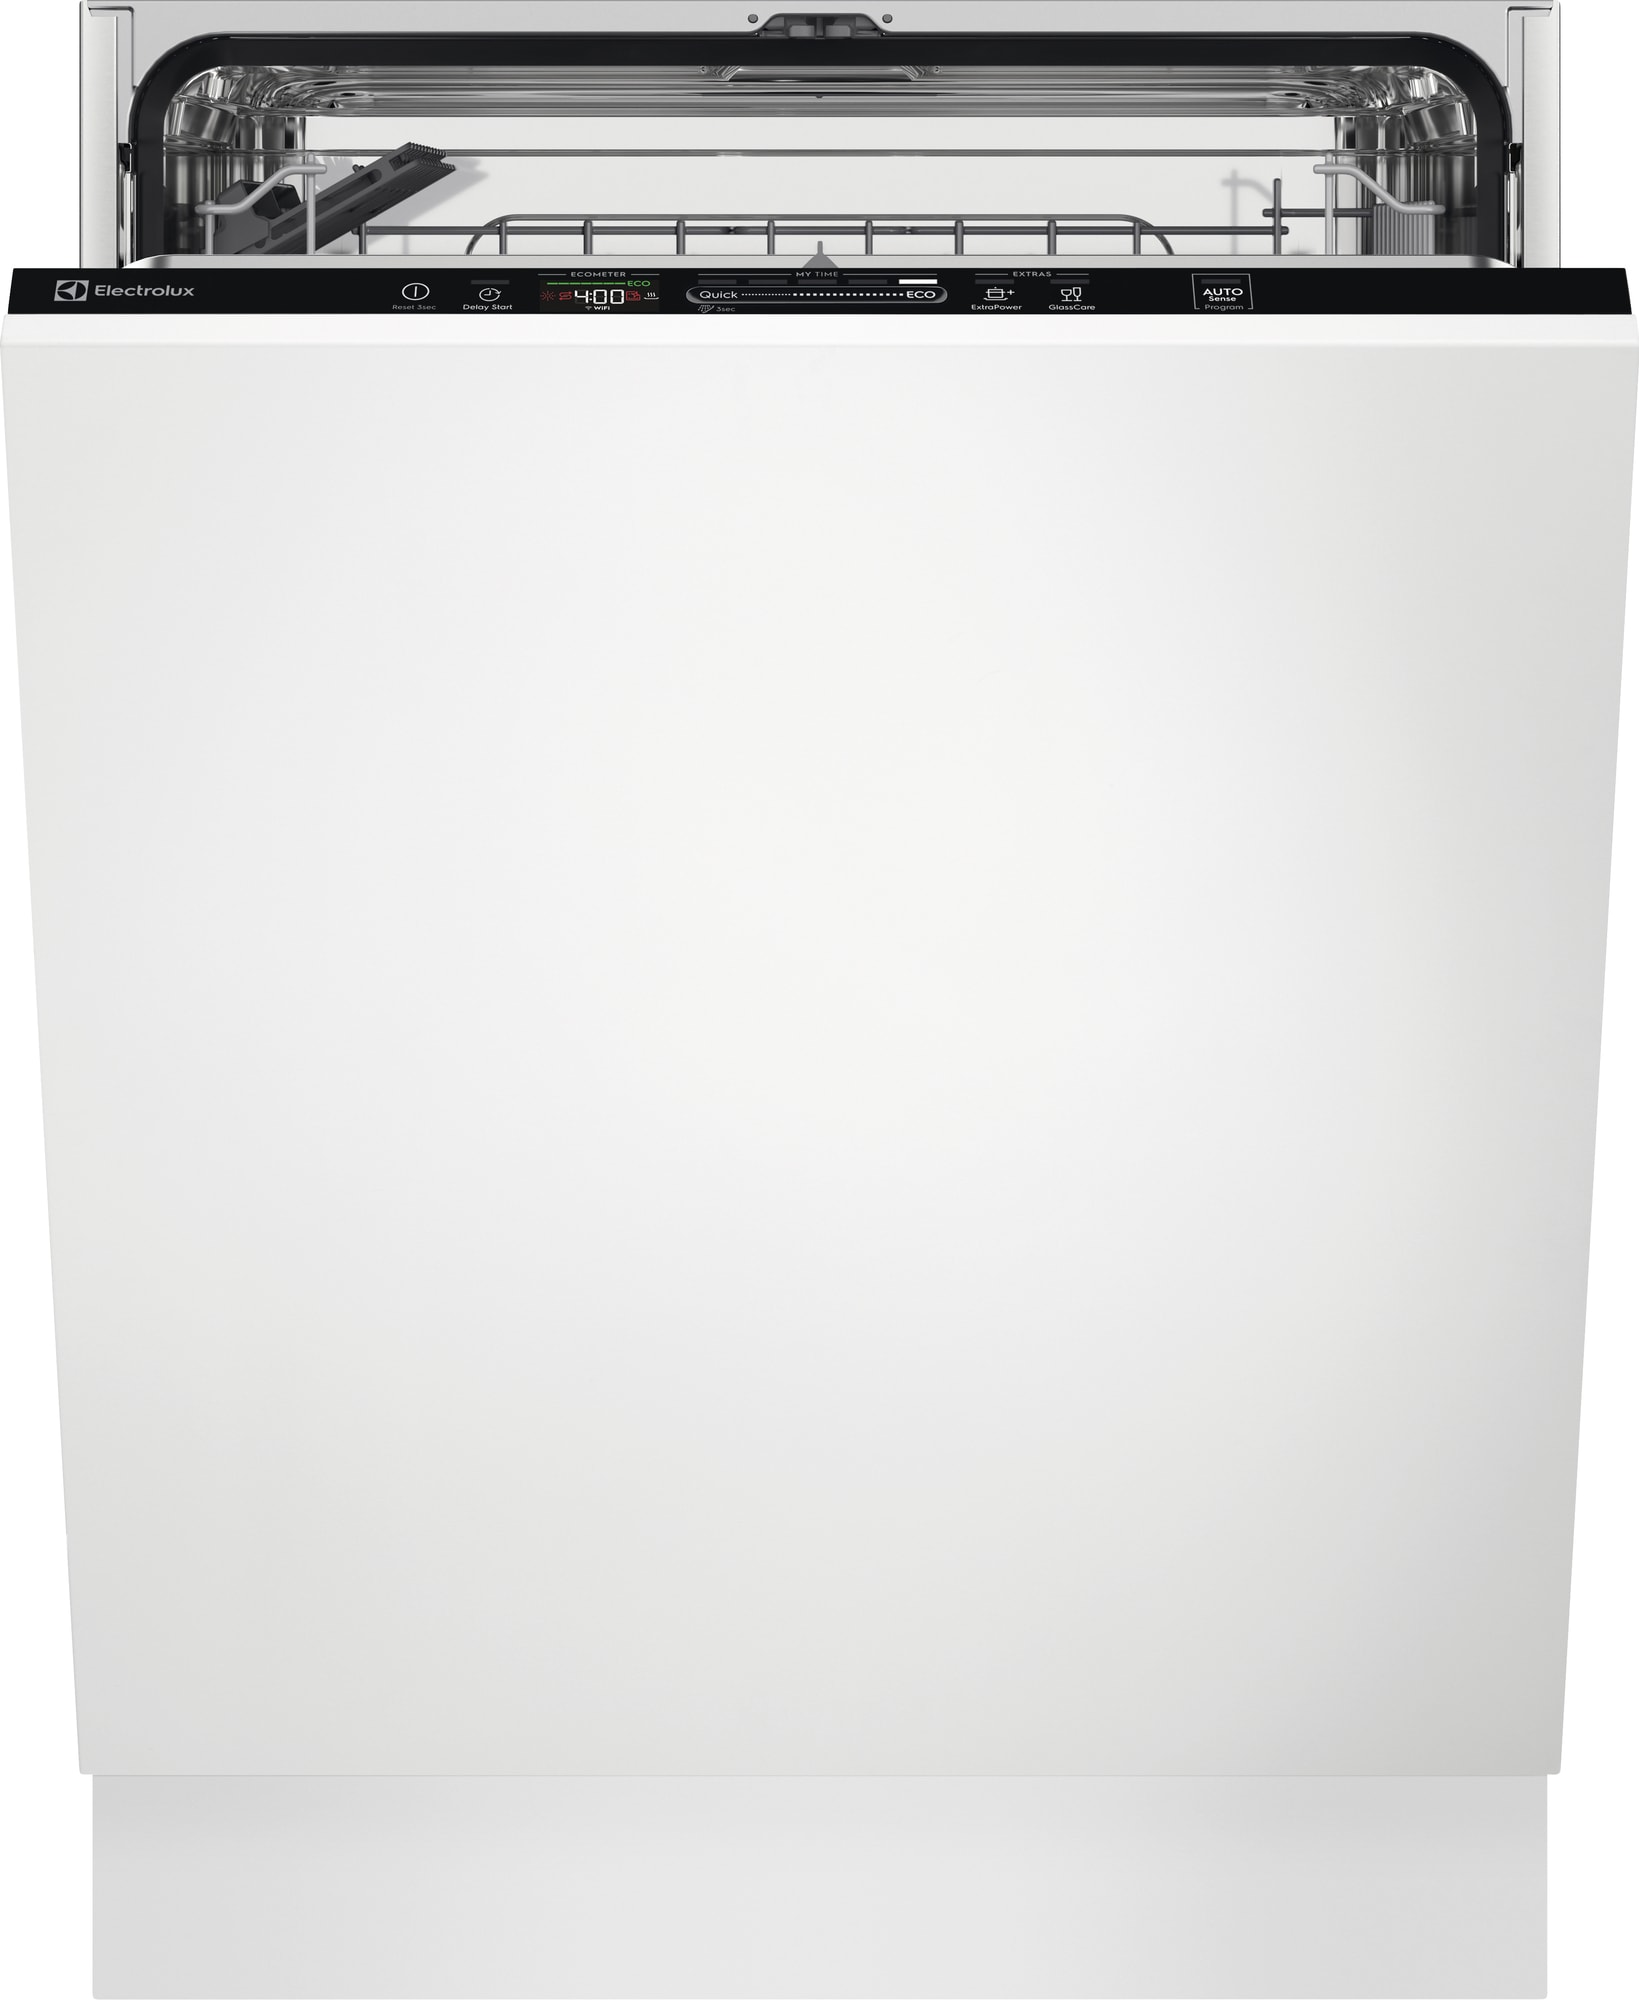 Electrolux oppvaskmaskin EEQ47310L (integrert) - Elkjøp